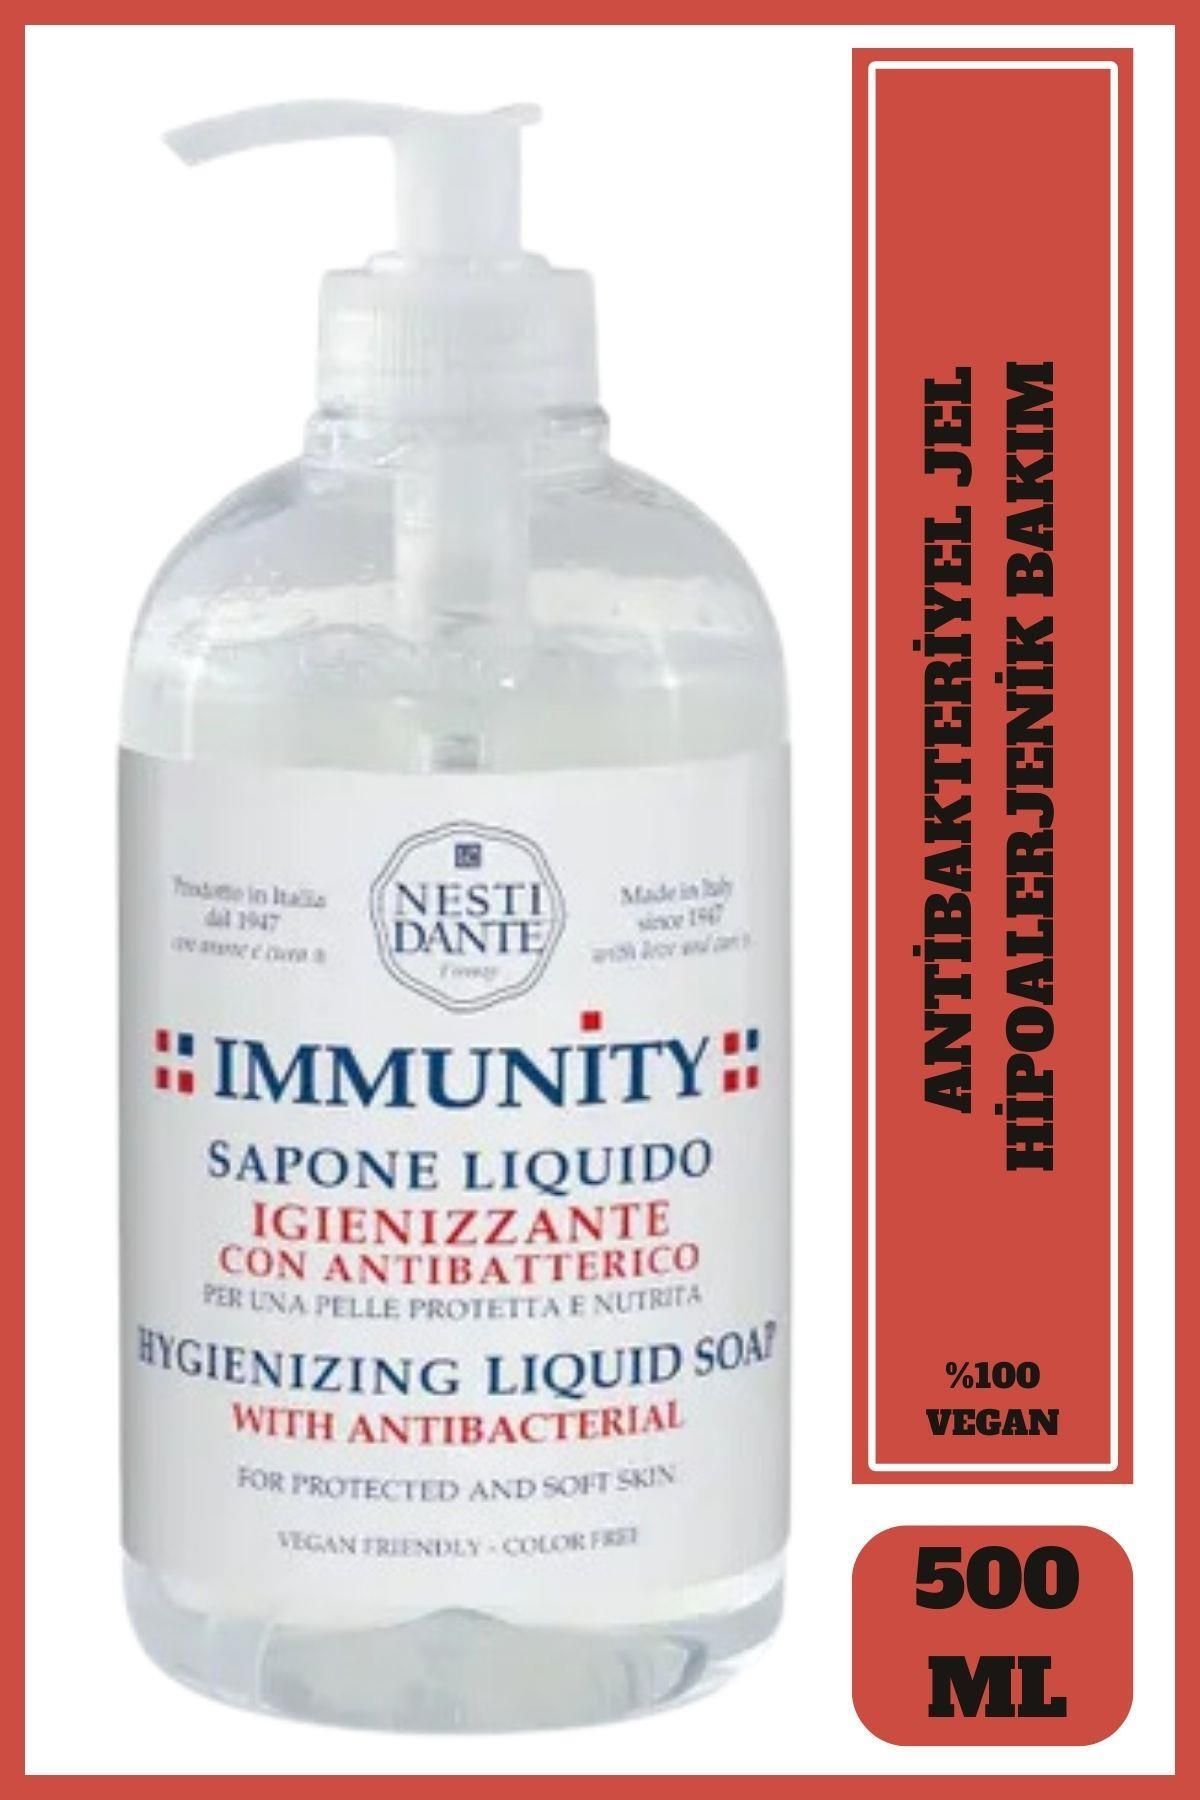 Nesti Dante Antibakteriyel Jel Immunity Hygienizing El Vegan Bakımı 500 ml